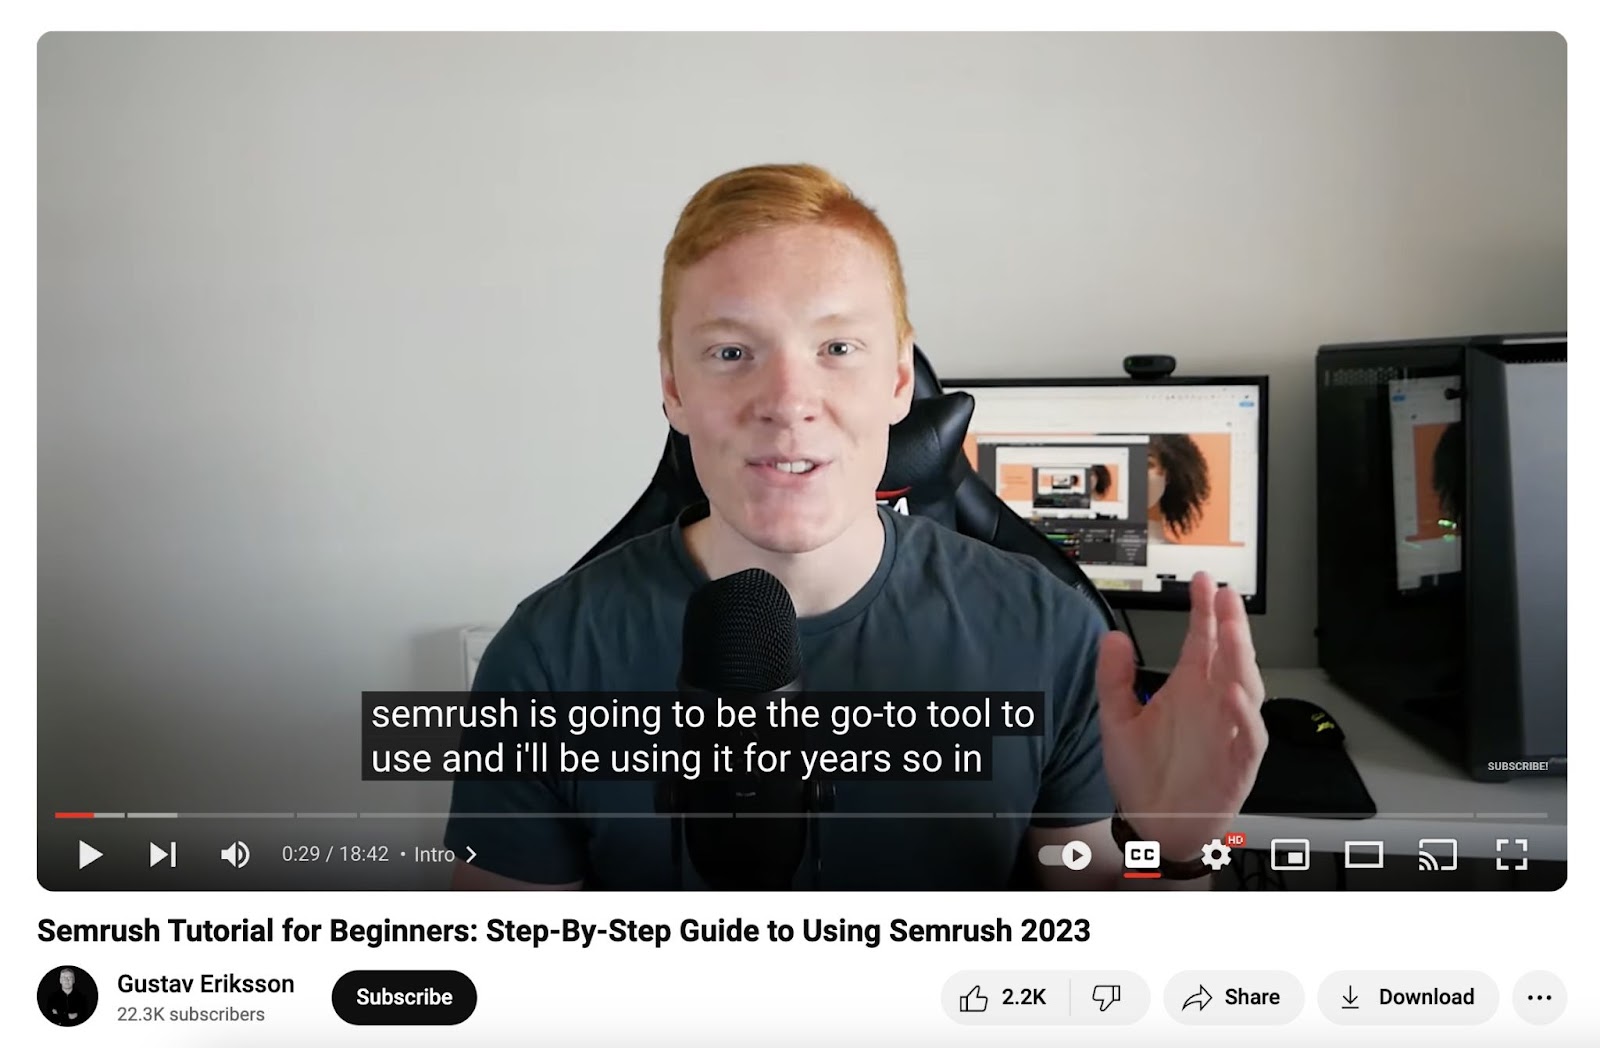 Semrush tutorial for beginners video on YouTube